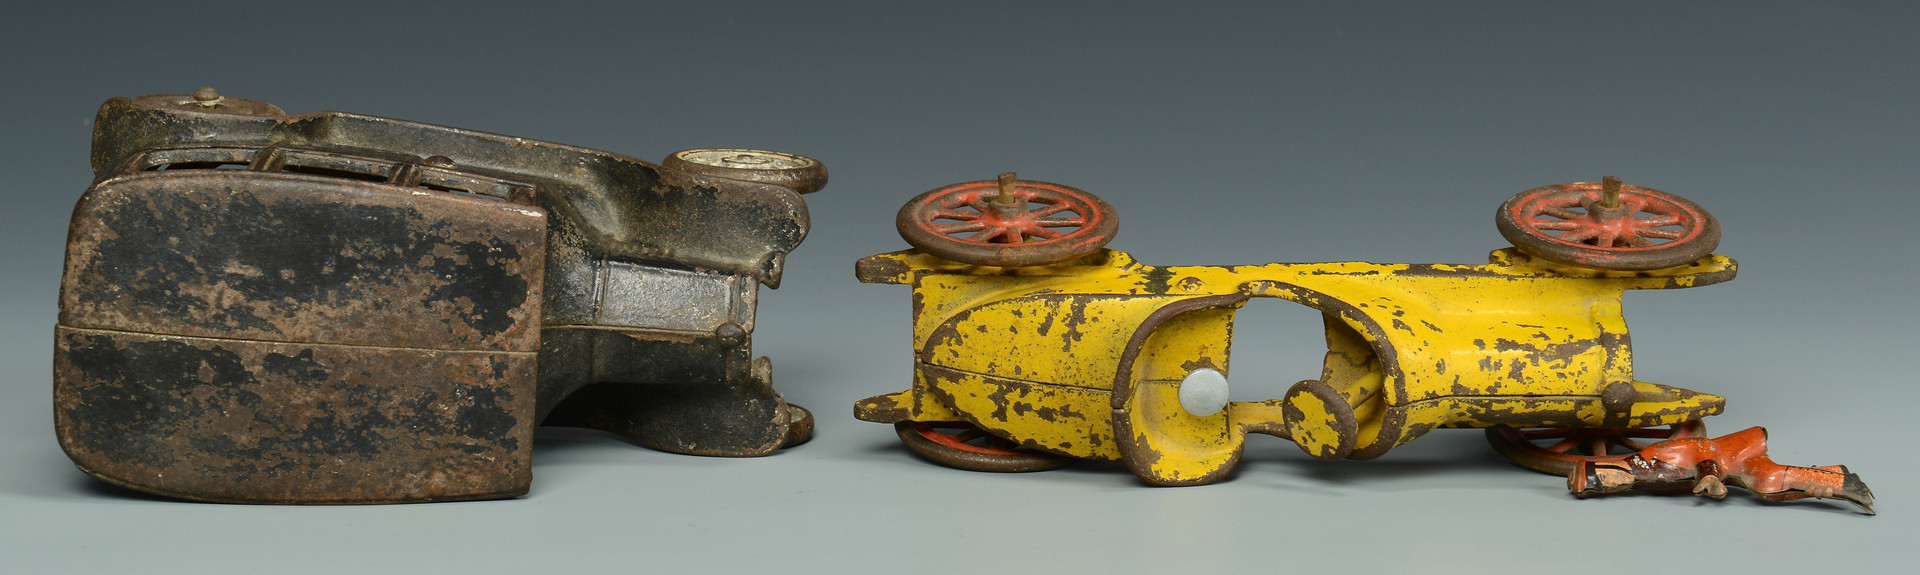 Lot 456: Vintage Cast Iron Toys